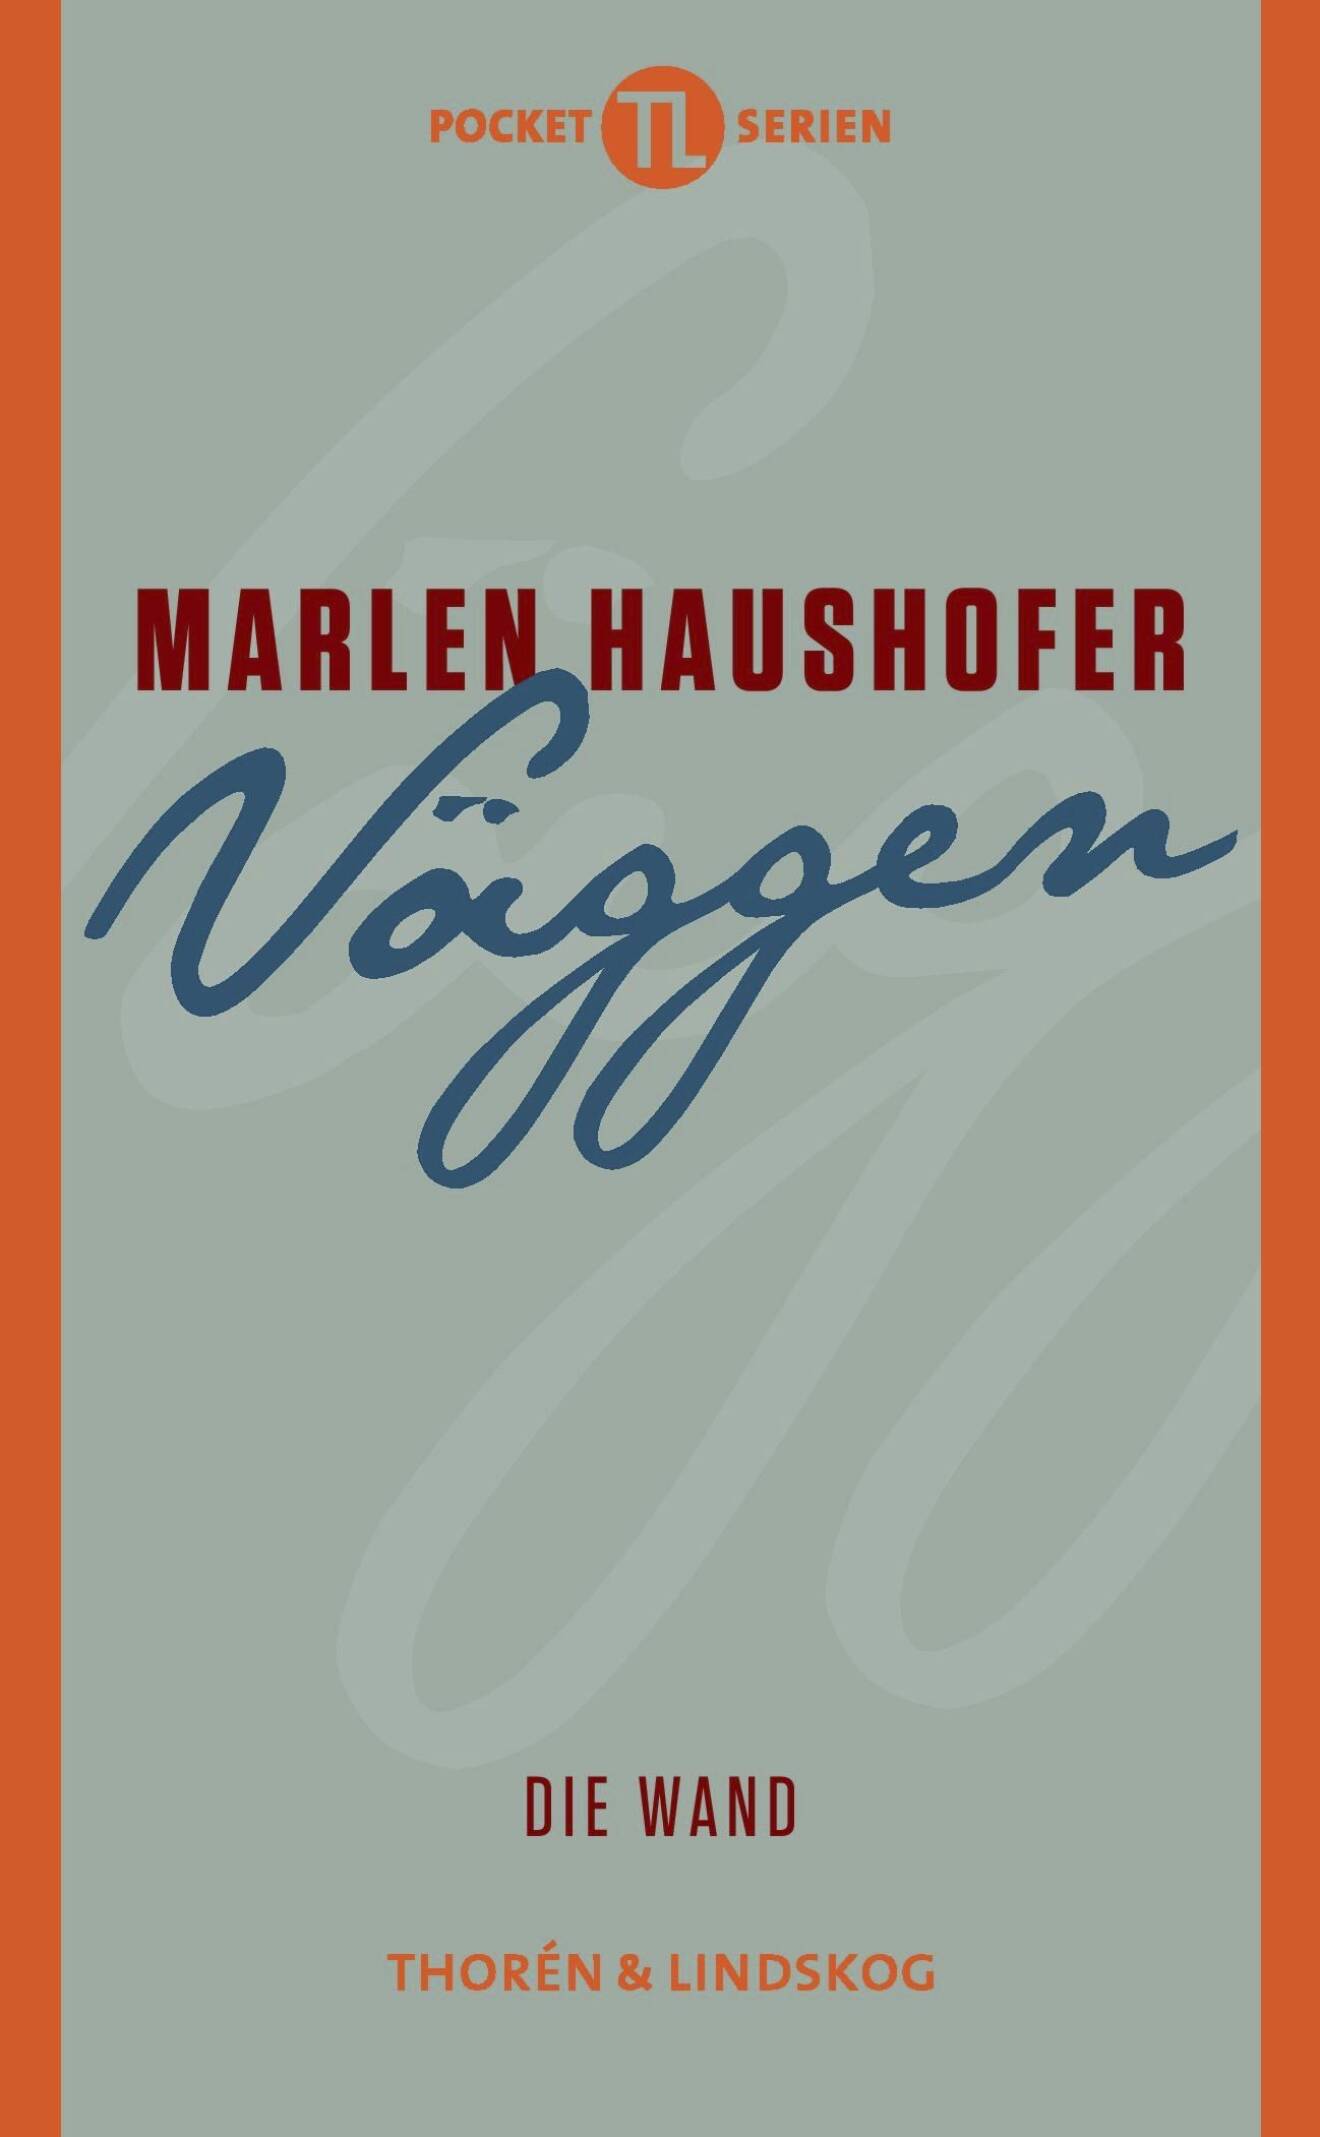 Väggen av Marlen Haushofer.